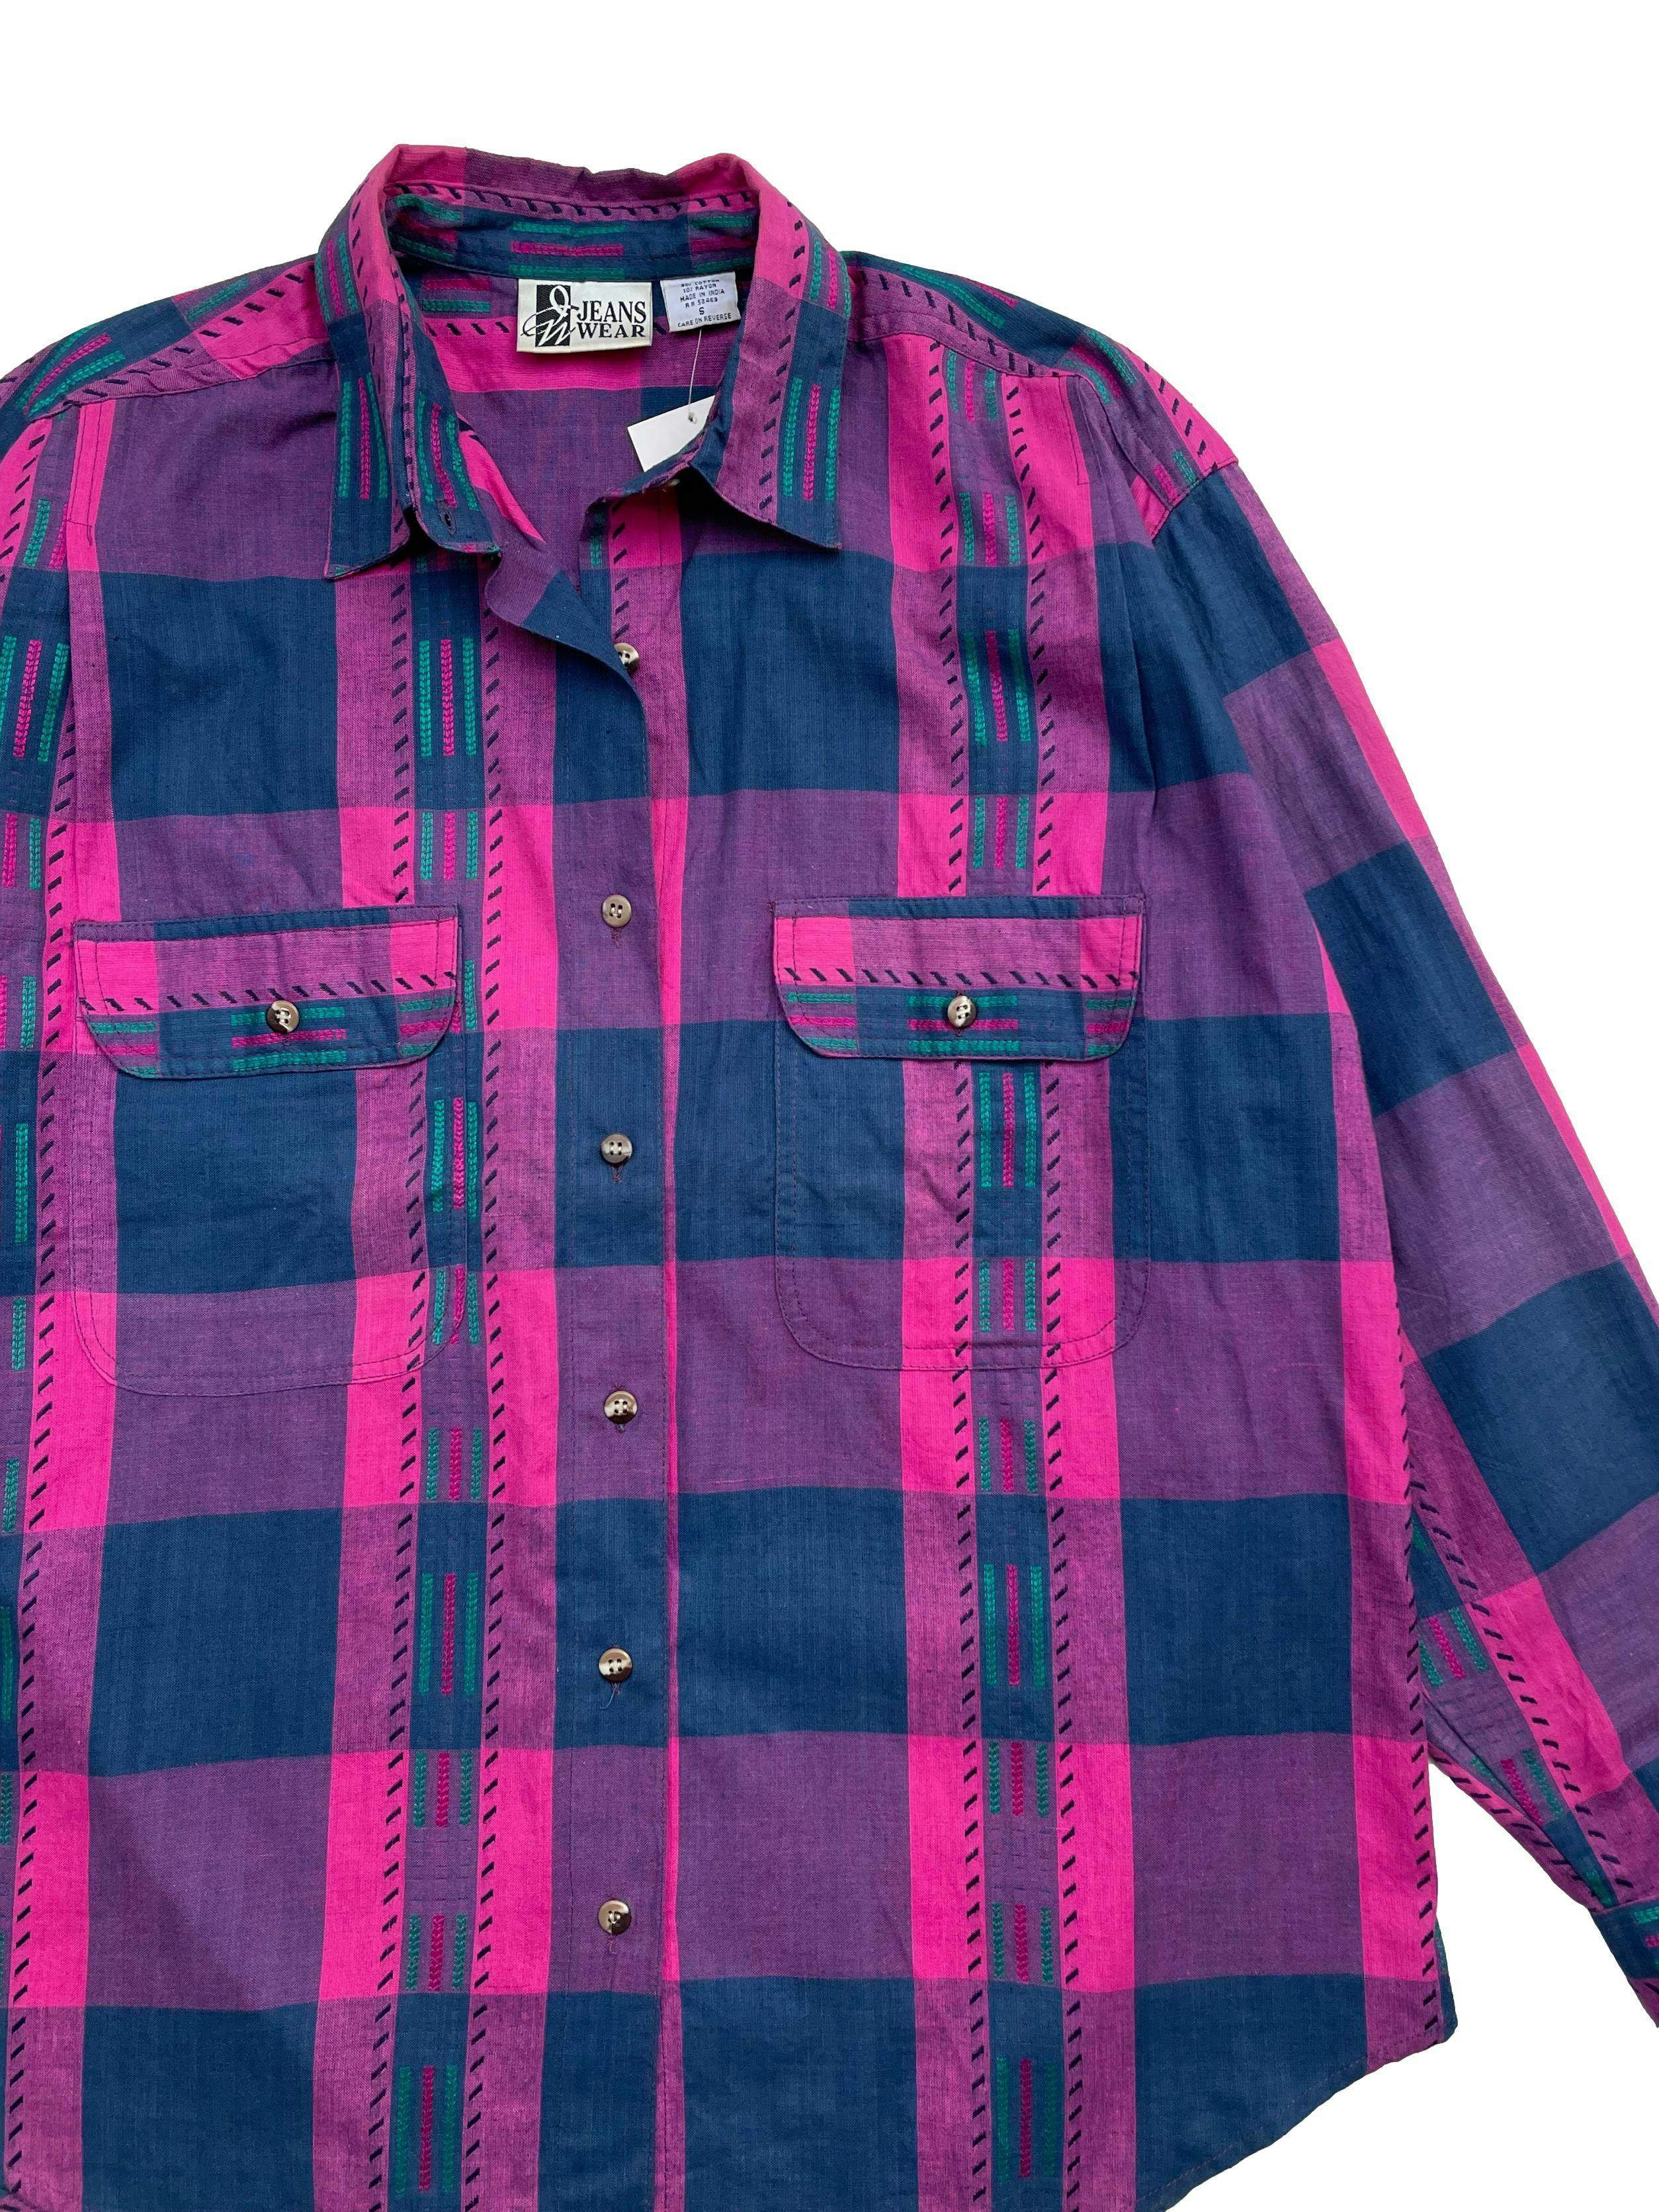 Blusa vintage a cuadros en tonos morados y azules, tela 90% algodón, con bolsillos solapa frontales. Largo 70 cm.